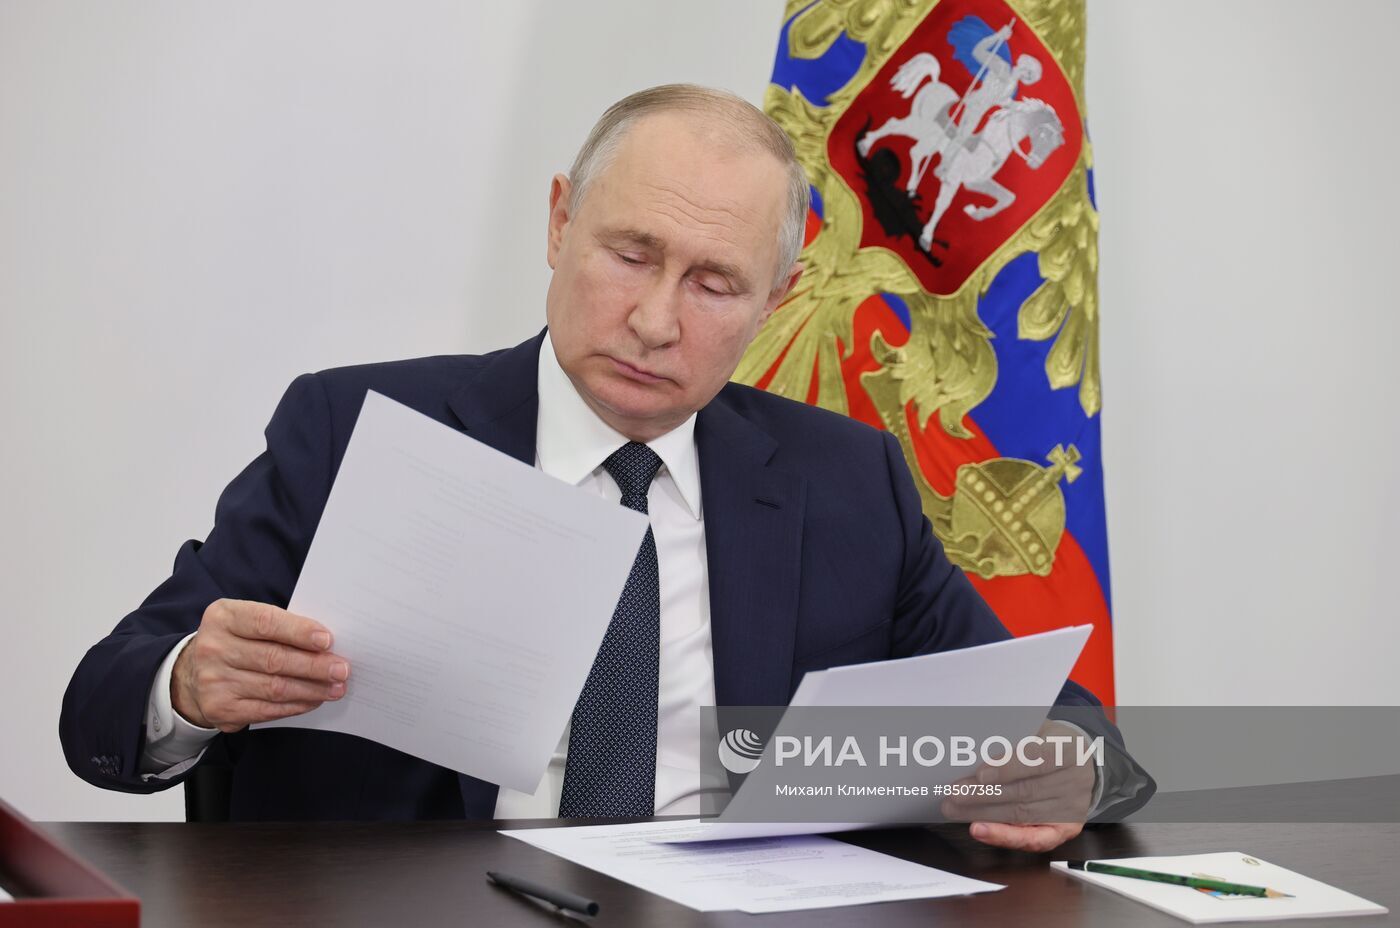 بوتين يصدق على عقيدة مناخية جديدة لروسيا